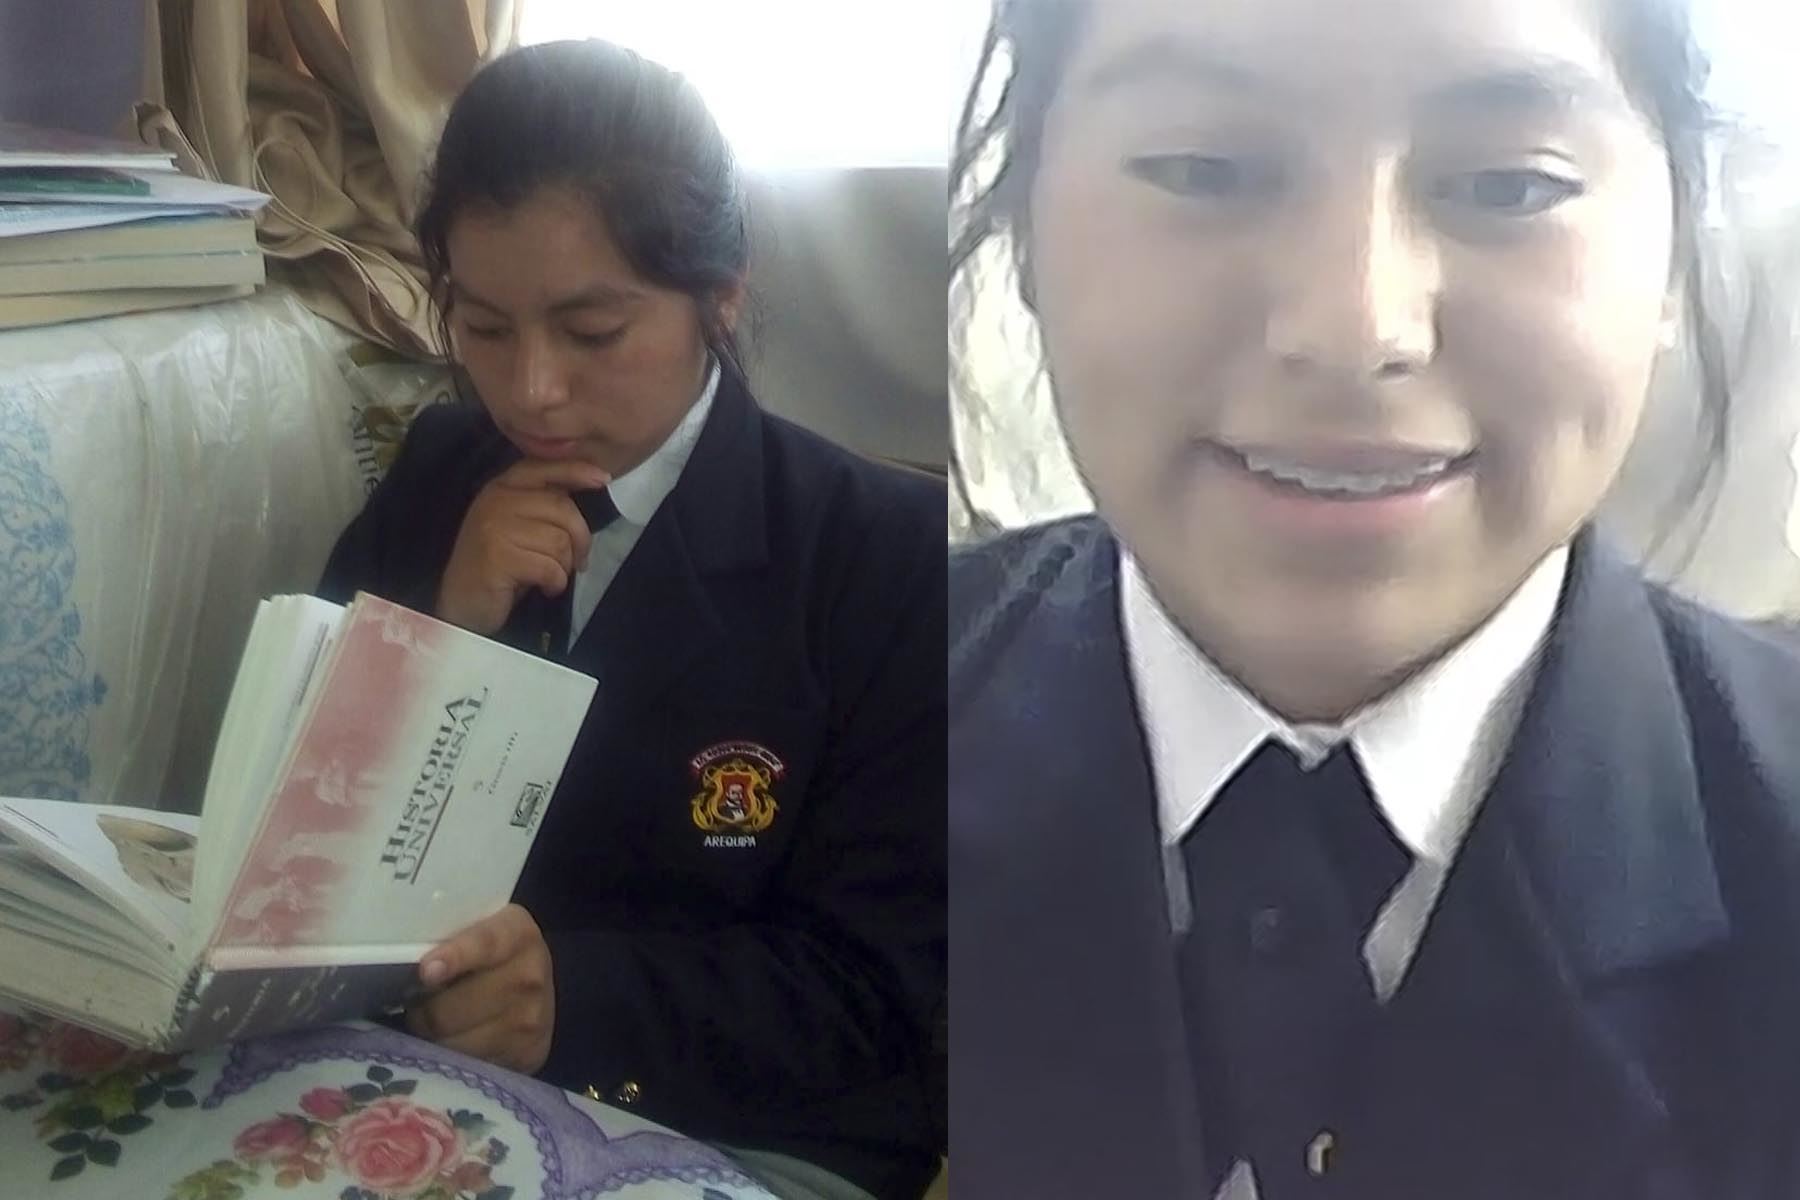 La escolar arequipeña Luz María de la Cruz (15) revisa cada día nuevos videos sobre la vida de las astronautas en NASA. Quiere estar preparada para su próxima visita al Centro Espacial Houston, en Estados Unidos.